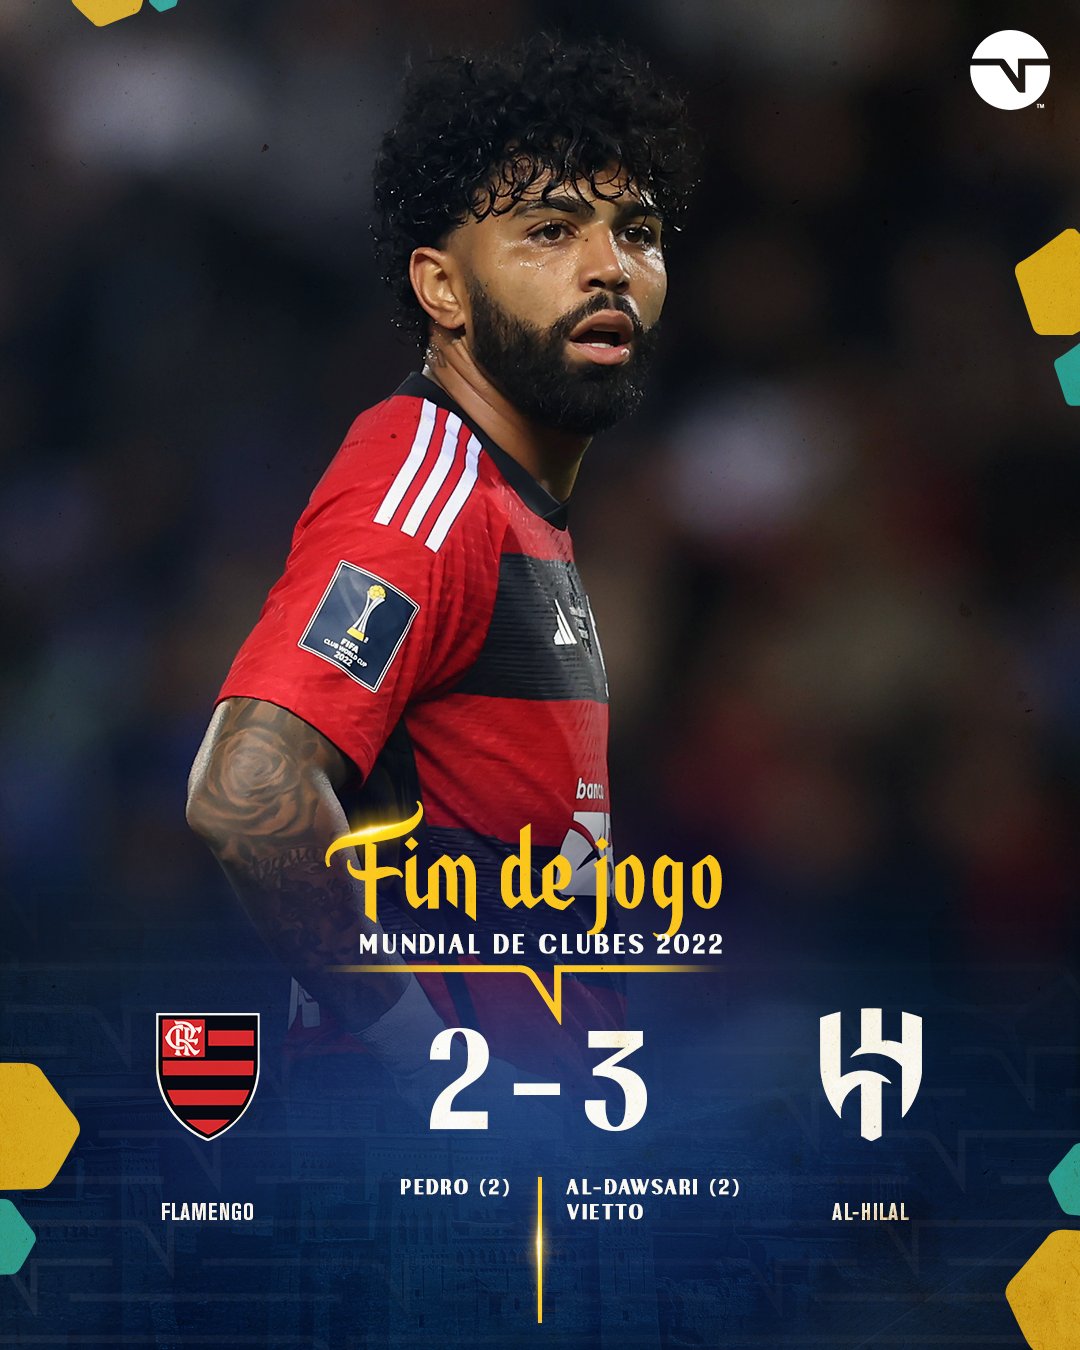 Com brTT jogando de Draven, Flamengo vence a Turquia no Mundial de LoL -  03/10/2019 - UOL Start